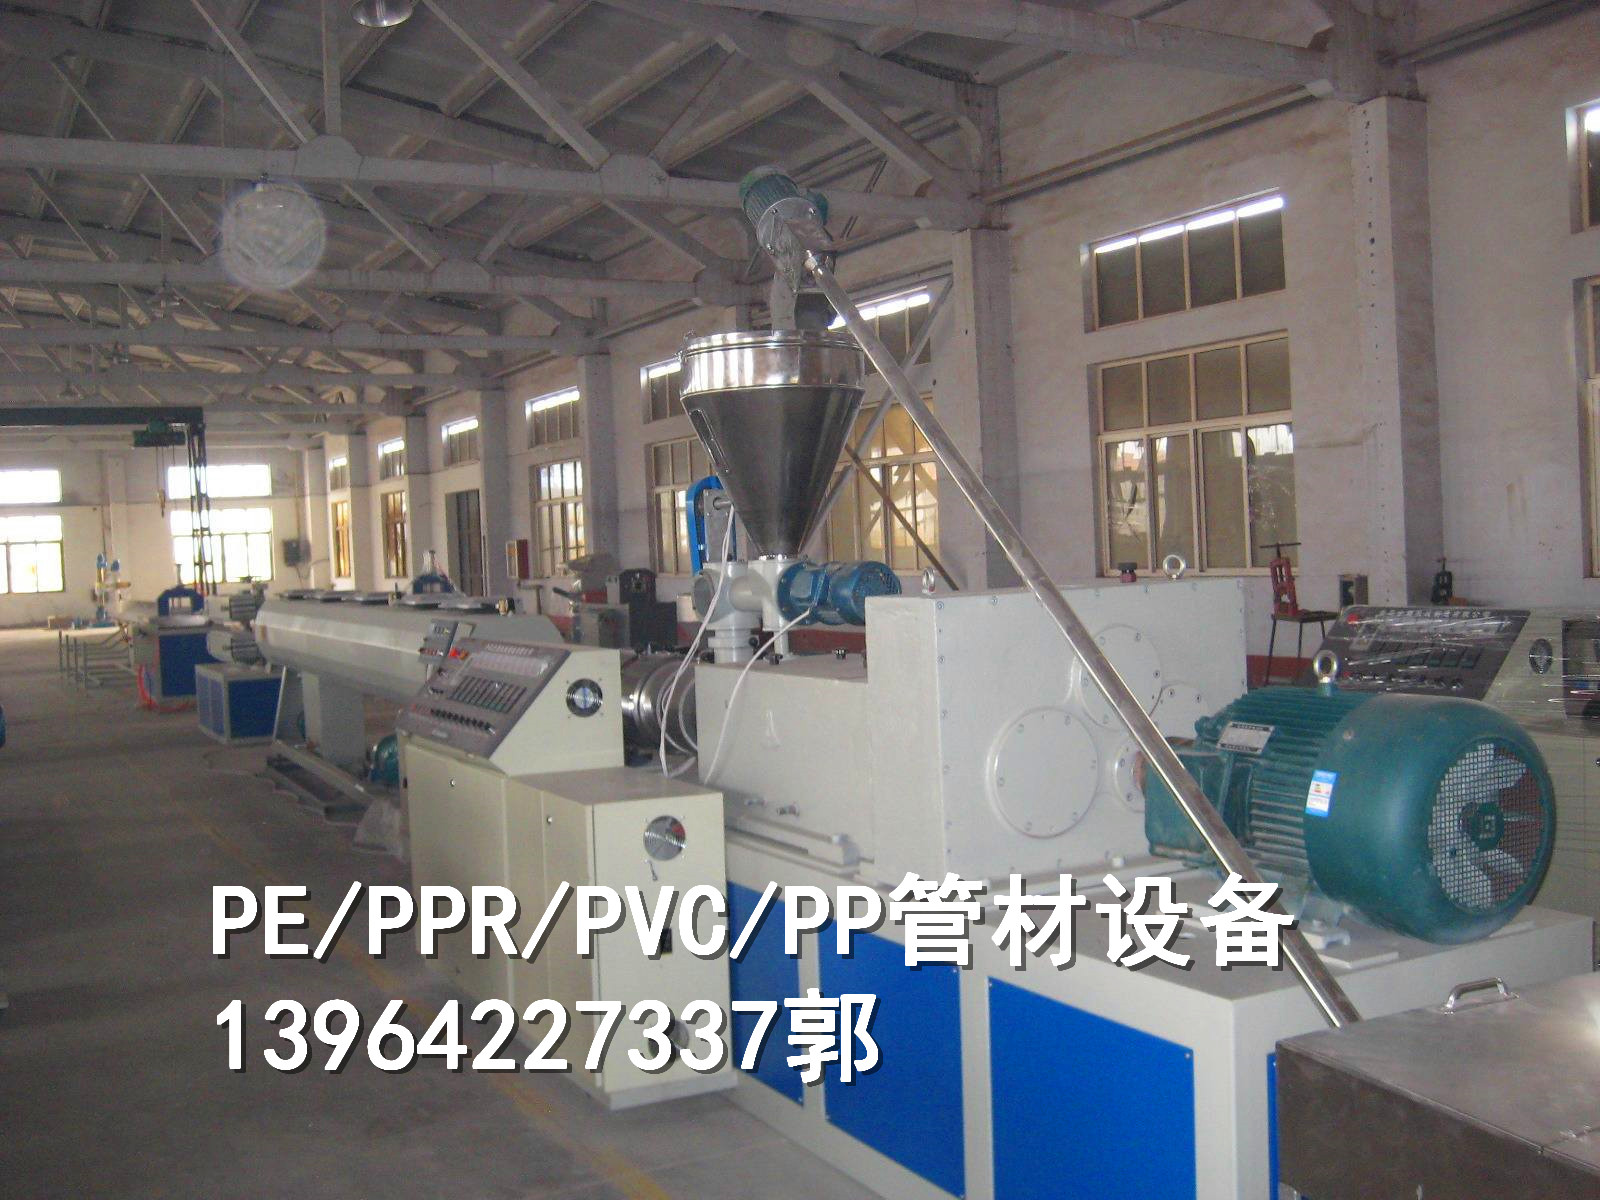 河南河南PE/PPR塑料管材设备 PE/PPR塑料管材设备厂家 PPR/PE塑料管材设备价格